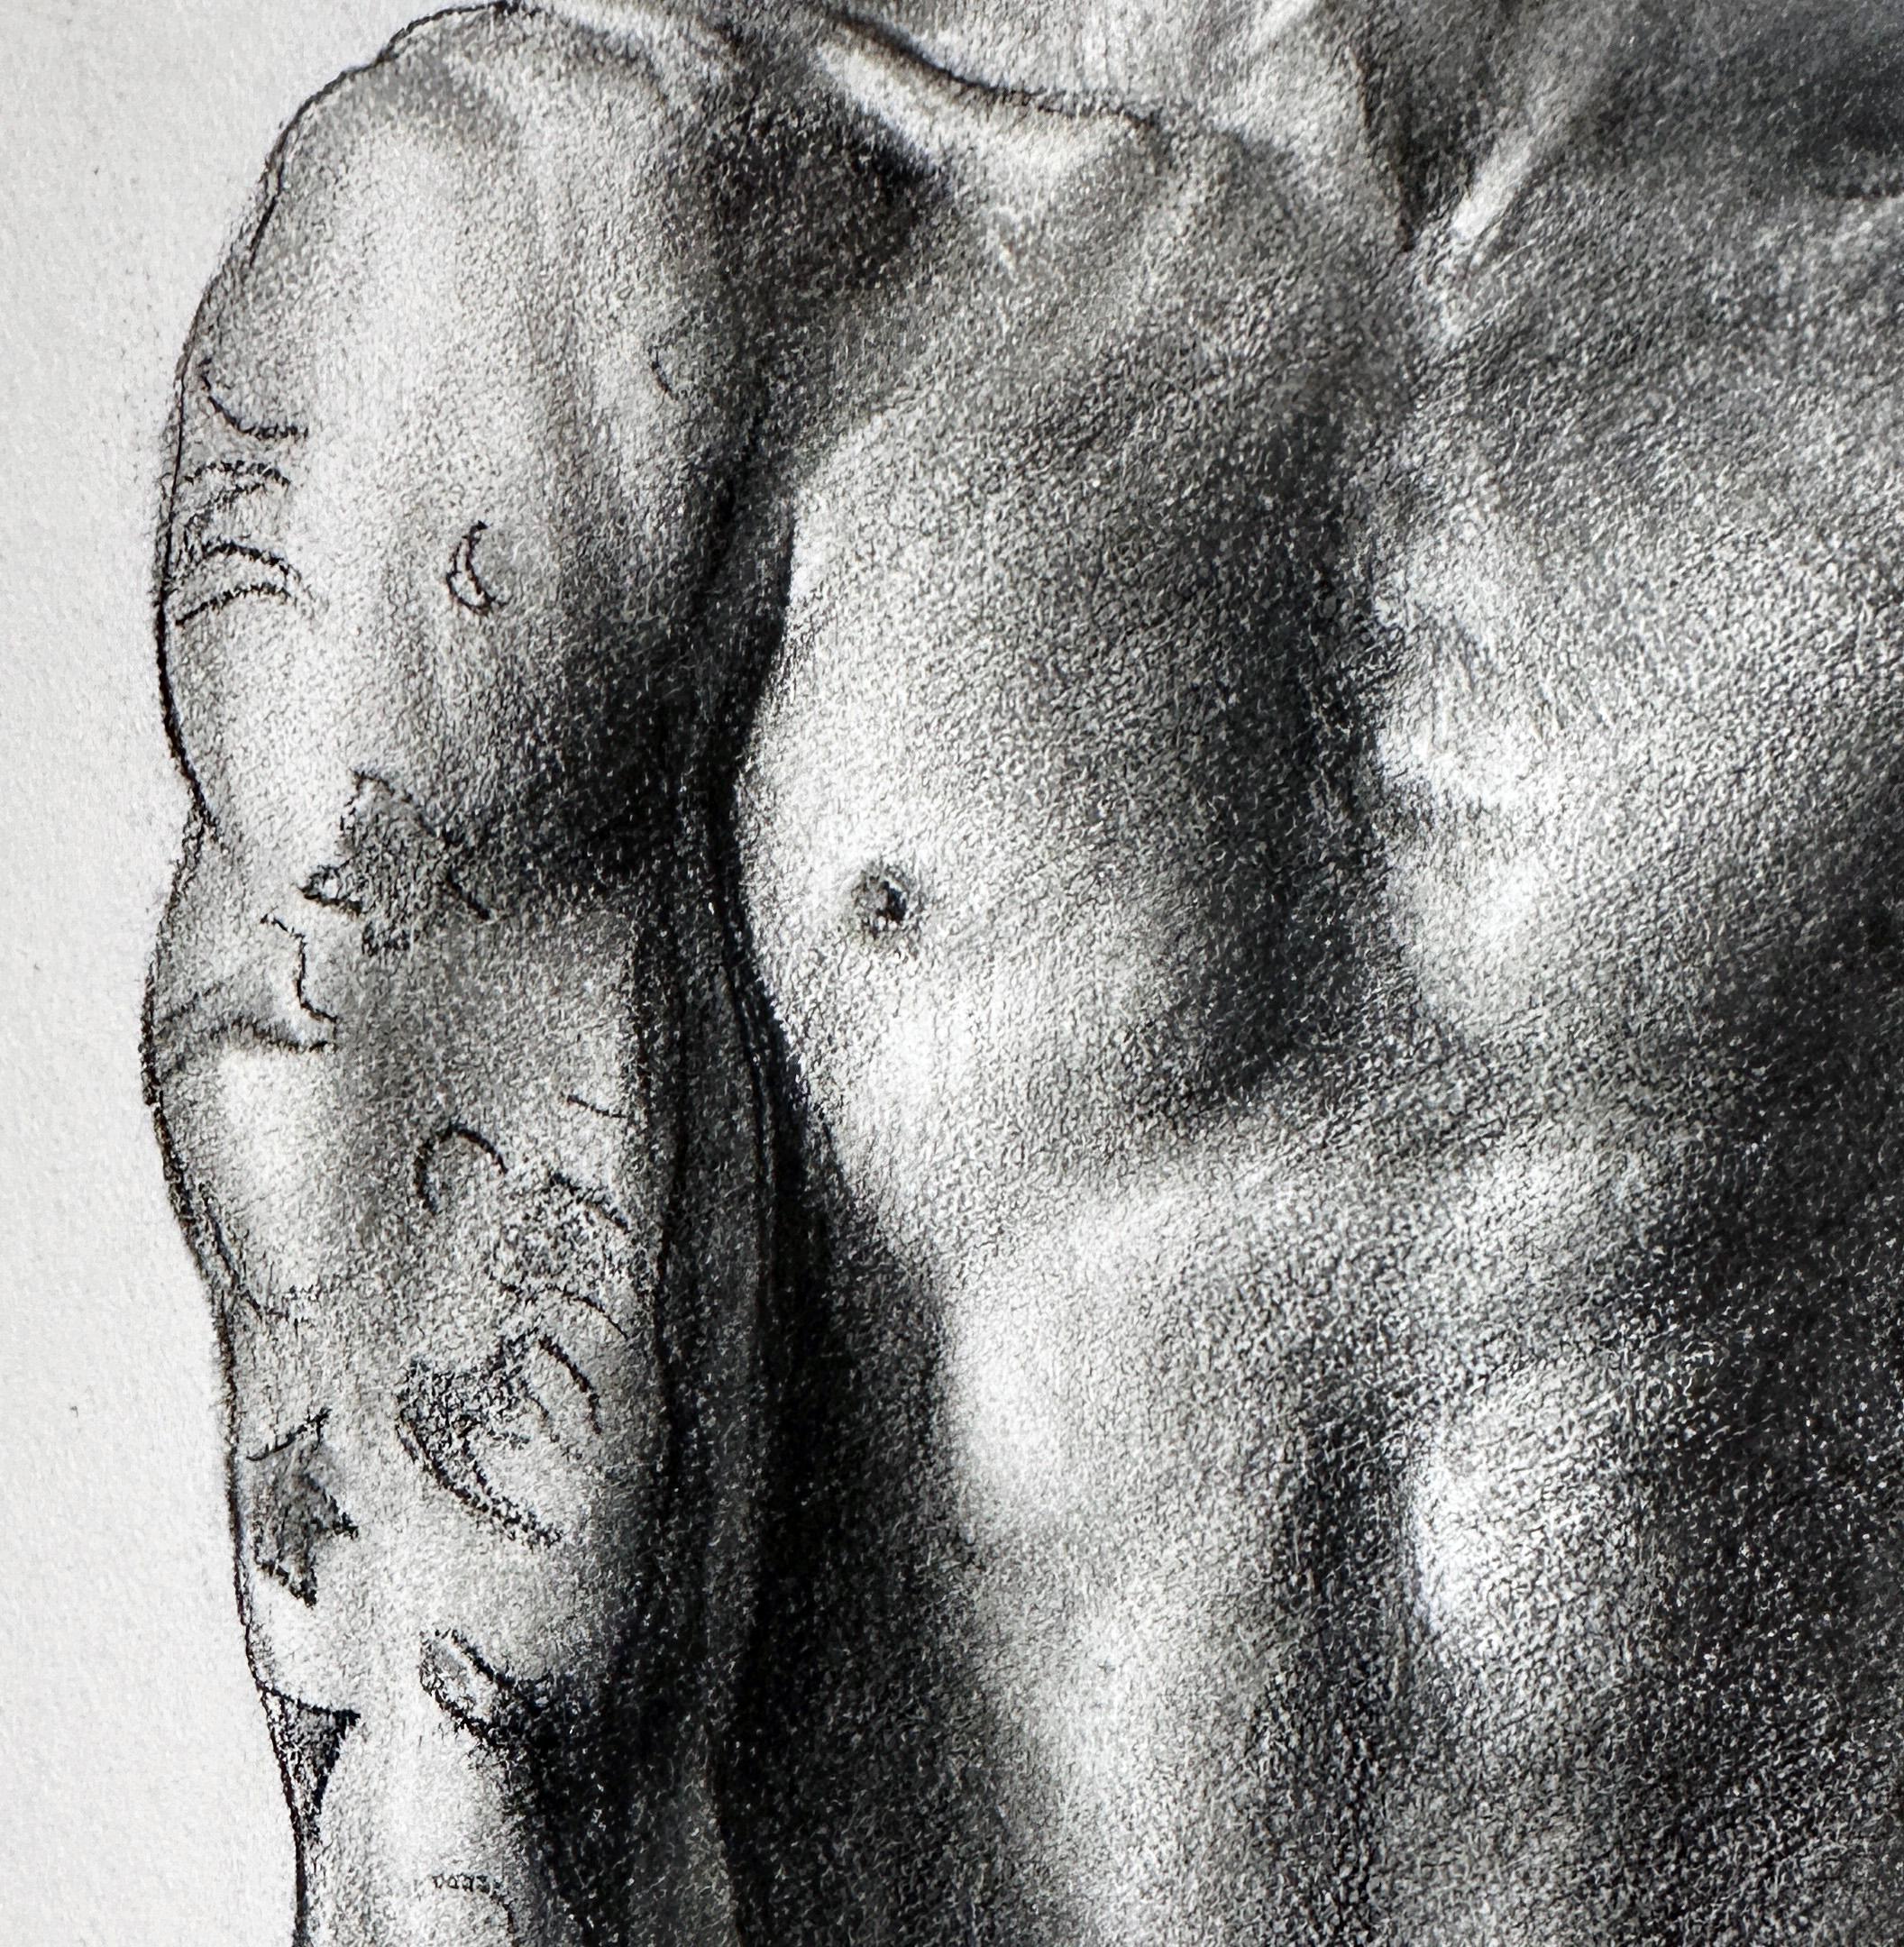 Force - Homme tatoué torse nu tenant un pistolet à eau en plastique violet, encadré - Contemporain Art par Bruno Surdo